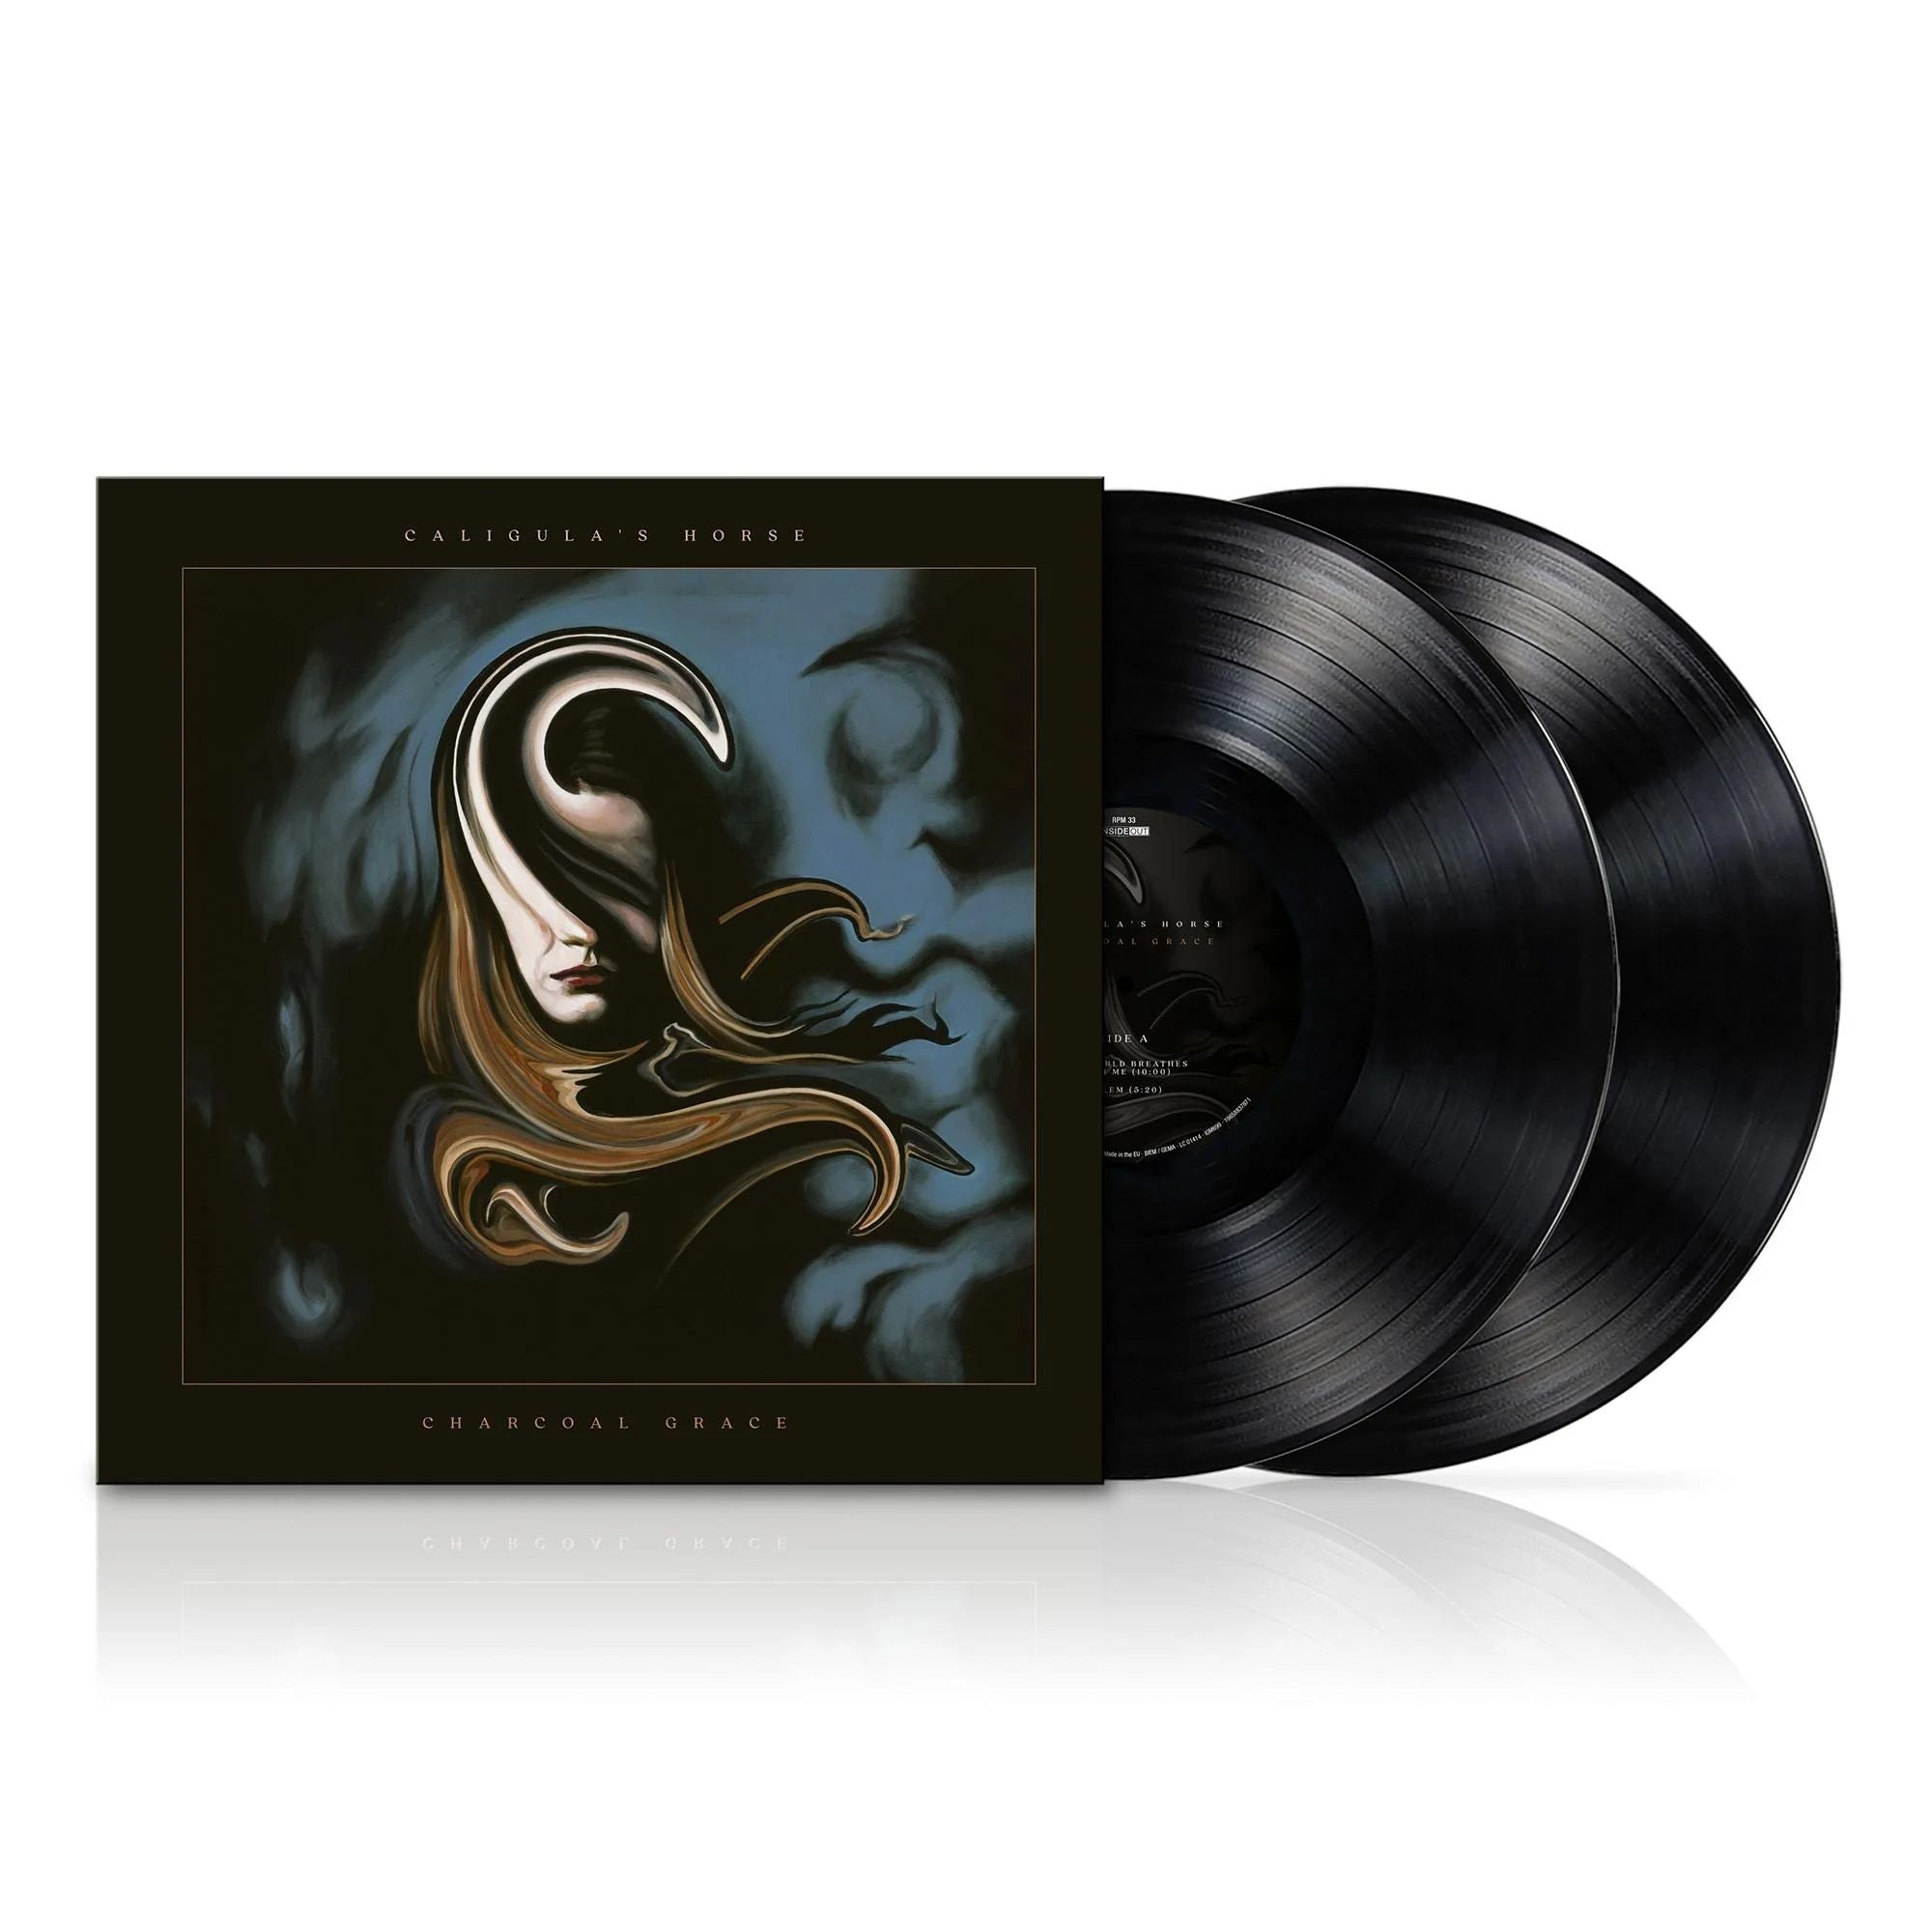 Caligula's Horse - Charcoal Grace (180g 2LP gatefold) - Vinyl - New